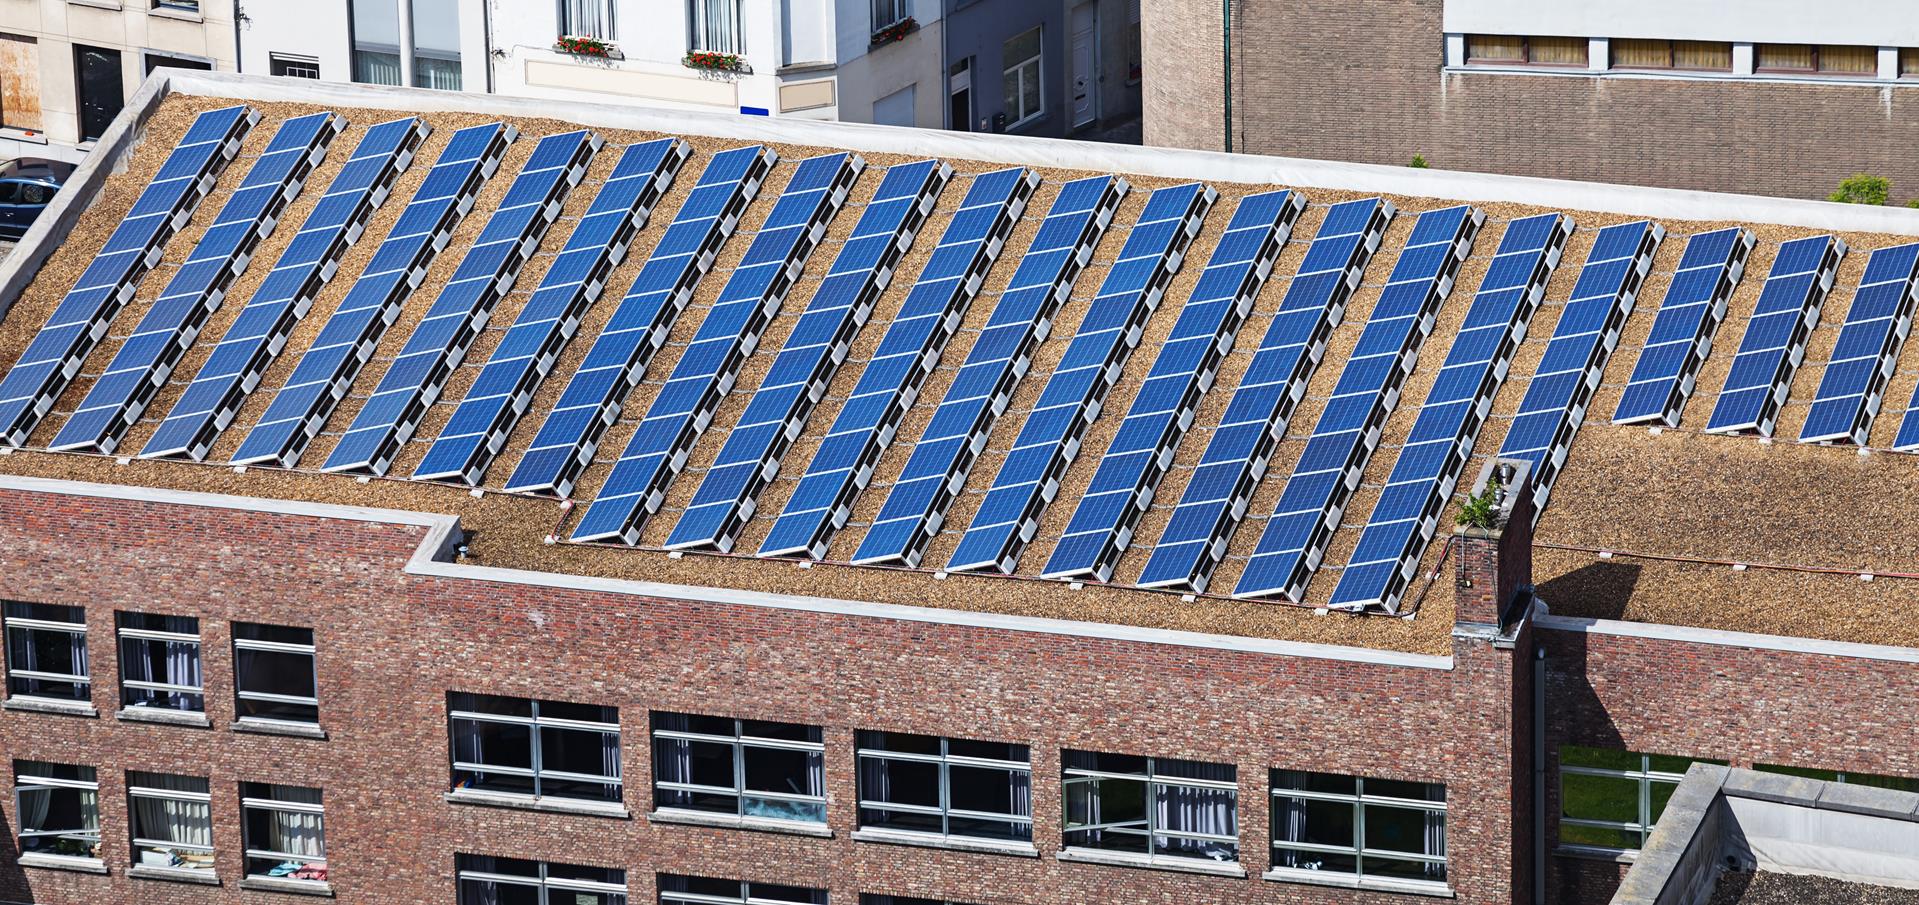 Firms urged to help create urban 'solar farms'